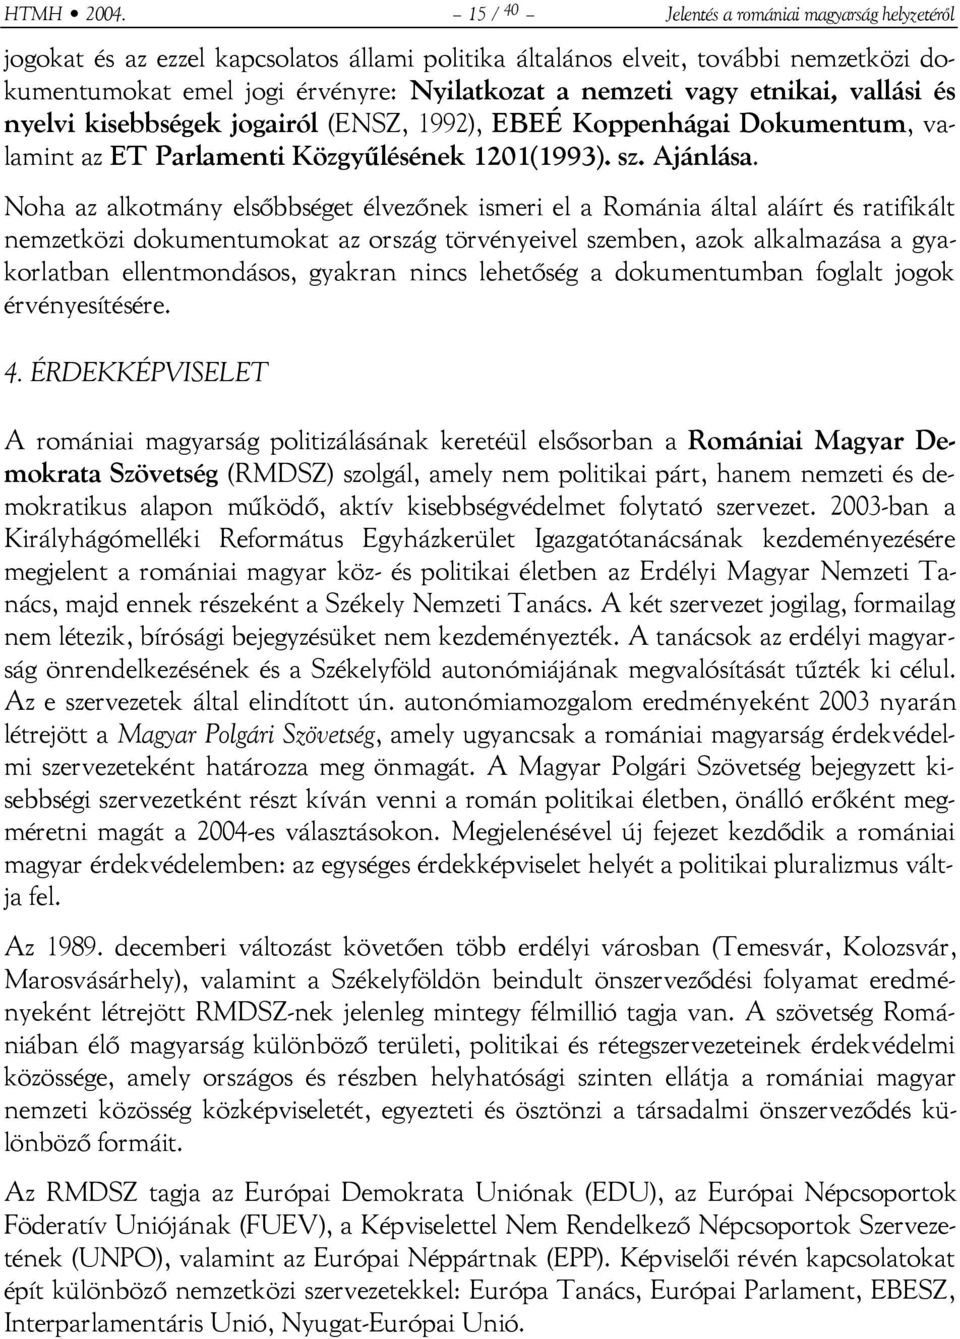 etnikai, vallási és nyelvi kisebbségek jogairól (ENSZ, 1992), EBEÉ Koppenhágai Dokumentum, valamint az ET Parlamenti Közgyűlésének 1201(1993). sz. Ajánlása.